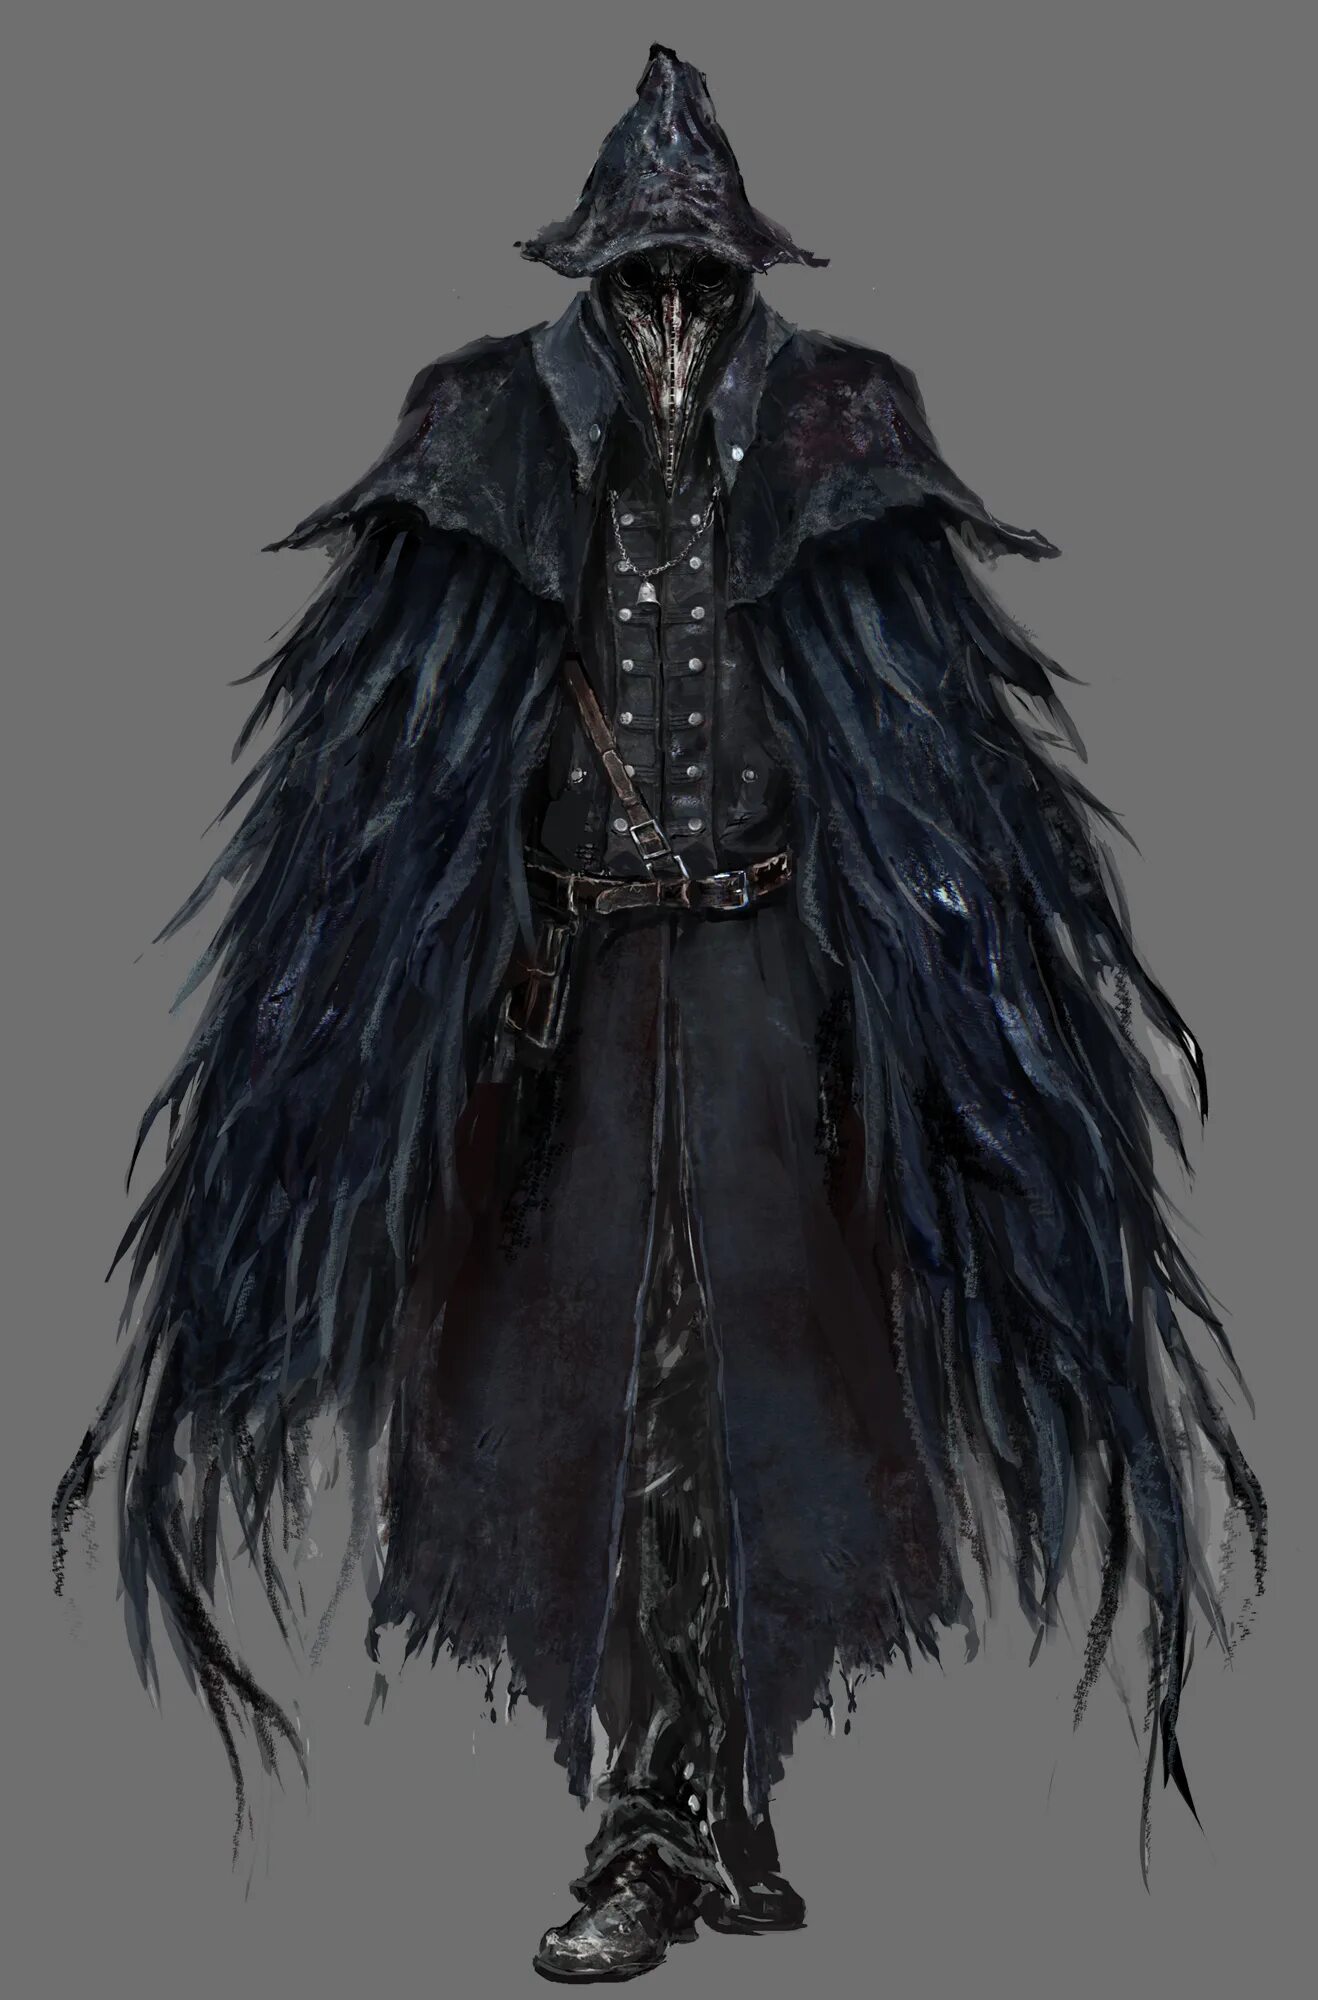 Монах данте. Bloodborne броня ворона. Бладборн Эйлин концепт арт. Вороний костюм бладборн. Бладборн доспехи ворона.